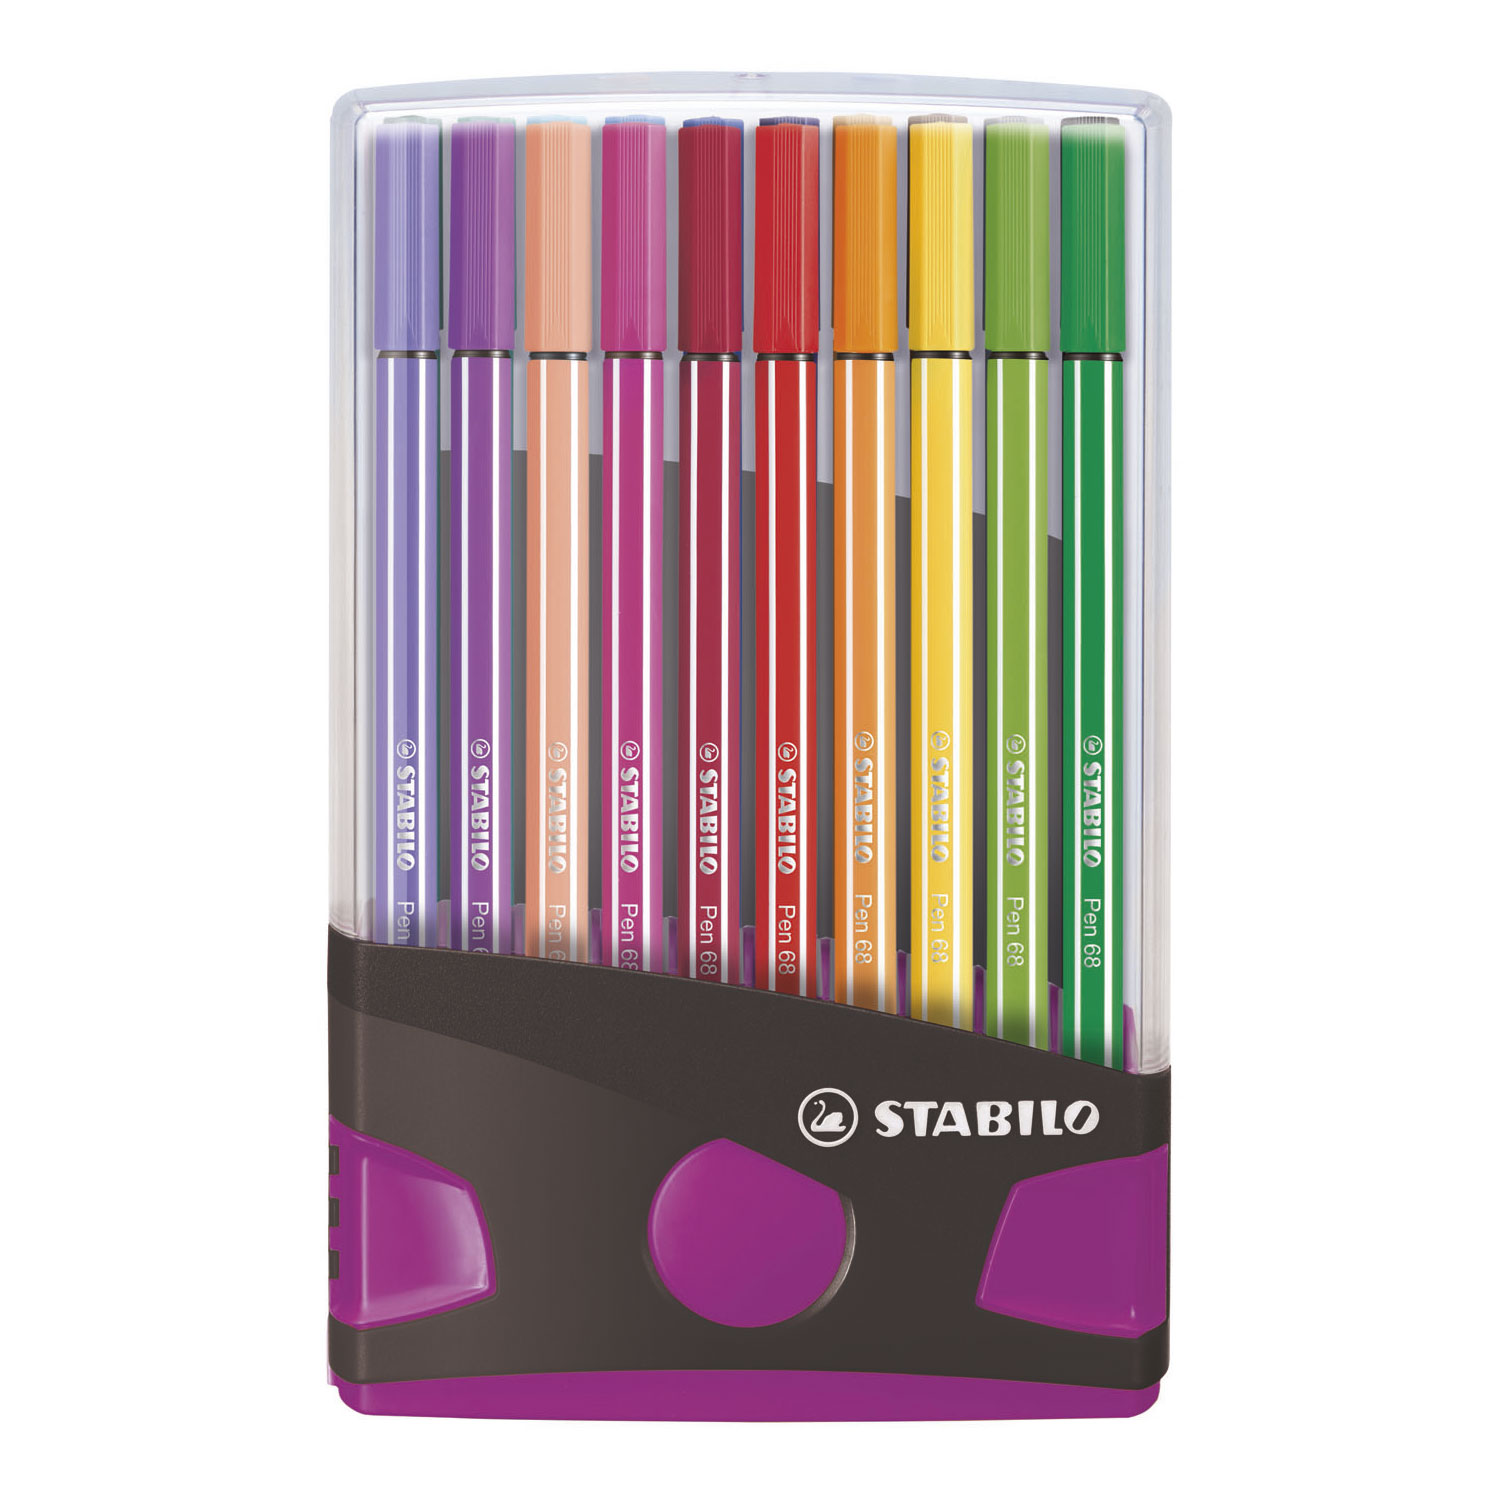 STABILO Pen 68 - Feutre - ColorParade - Lot de 20 Pièces - Anthracite/Rose